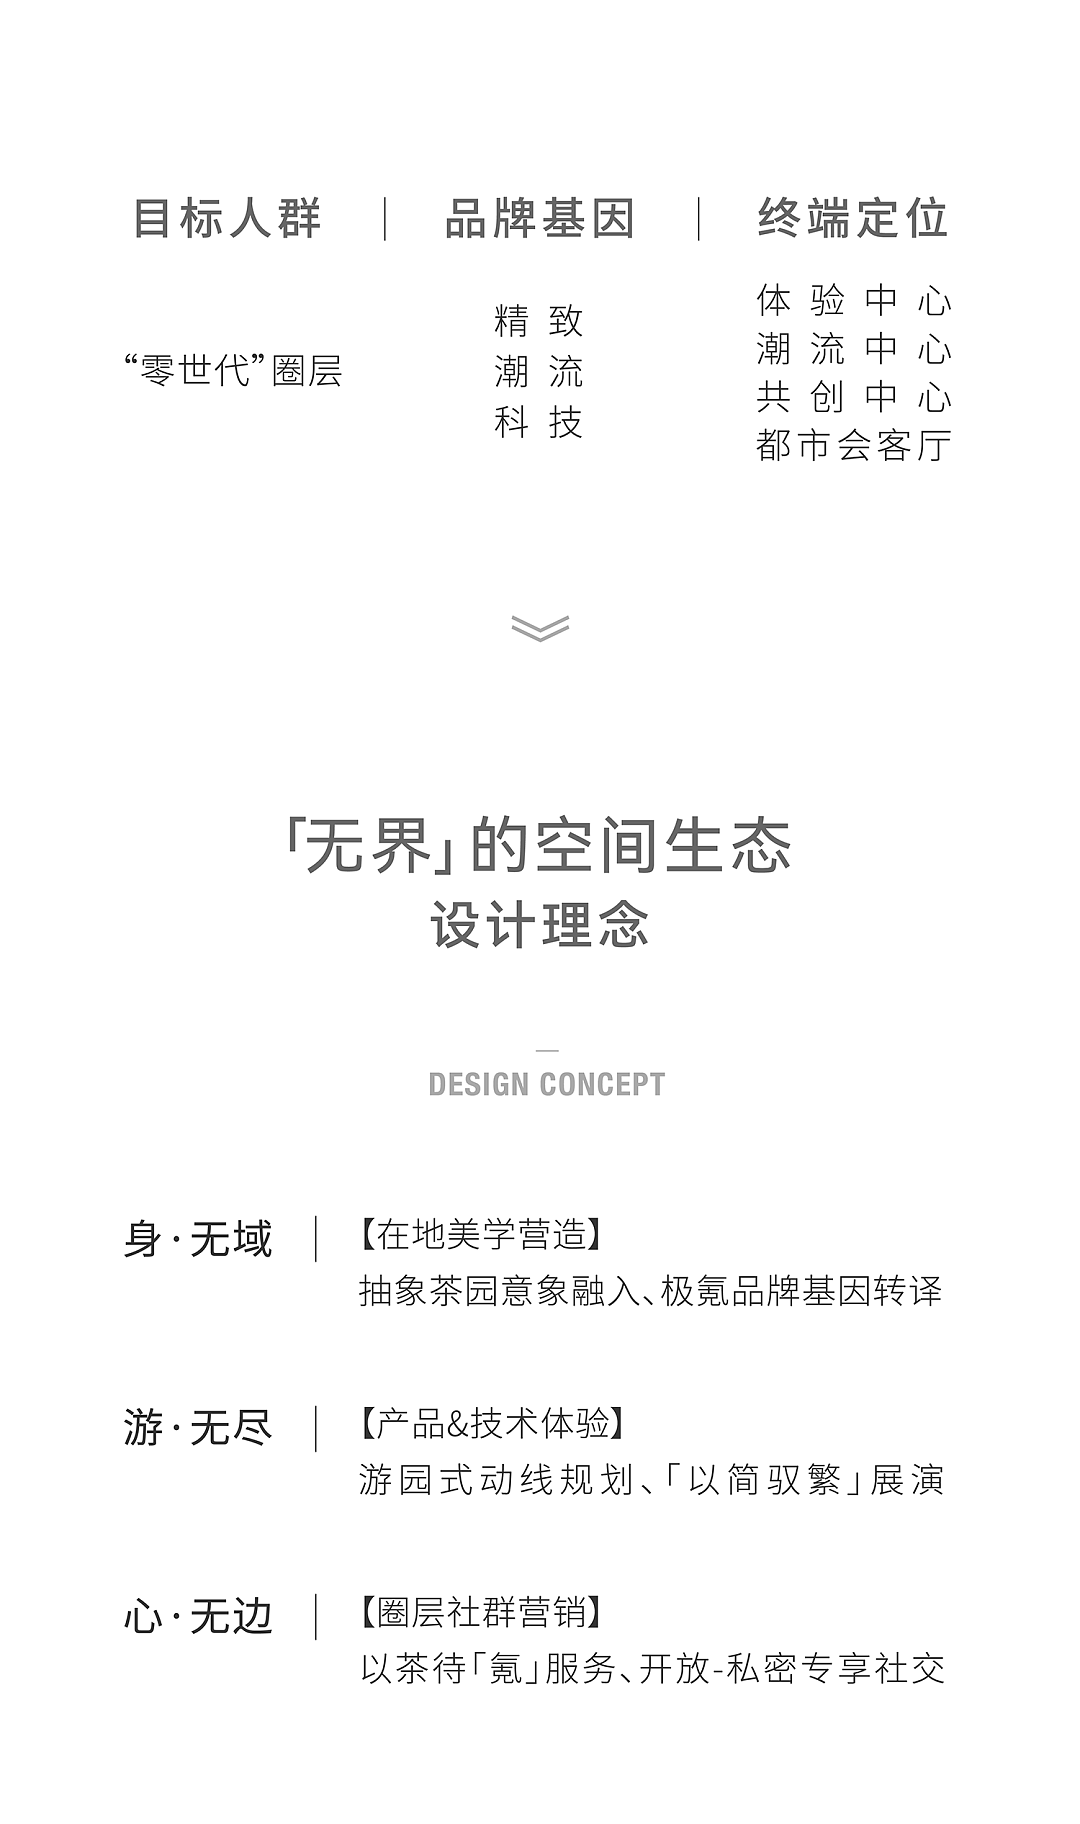 瑞德设计，空间设计，瑞德设计·空间，极氪，极氪中心，设计美学，建筑设计，杭州设计公司，